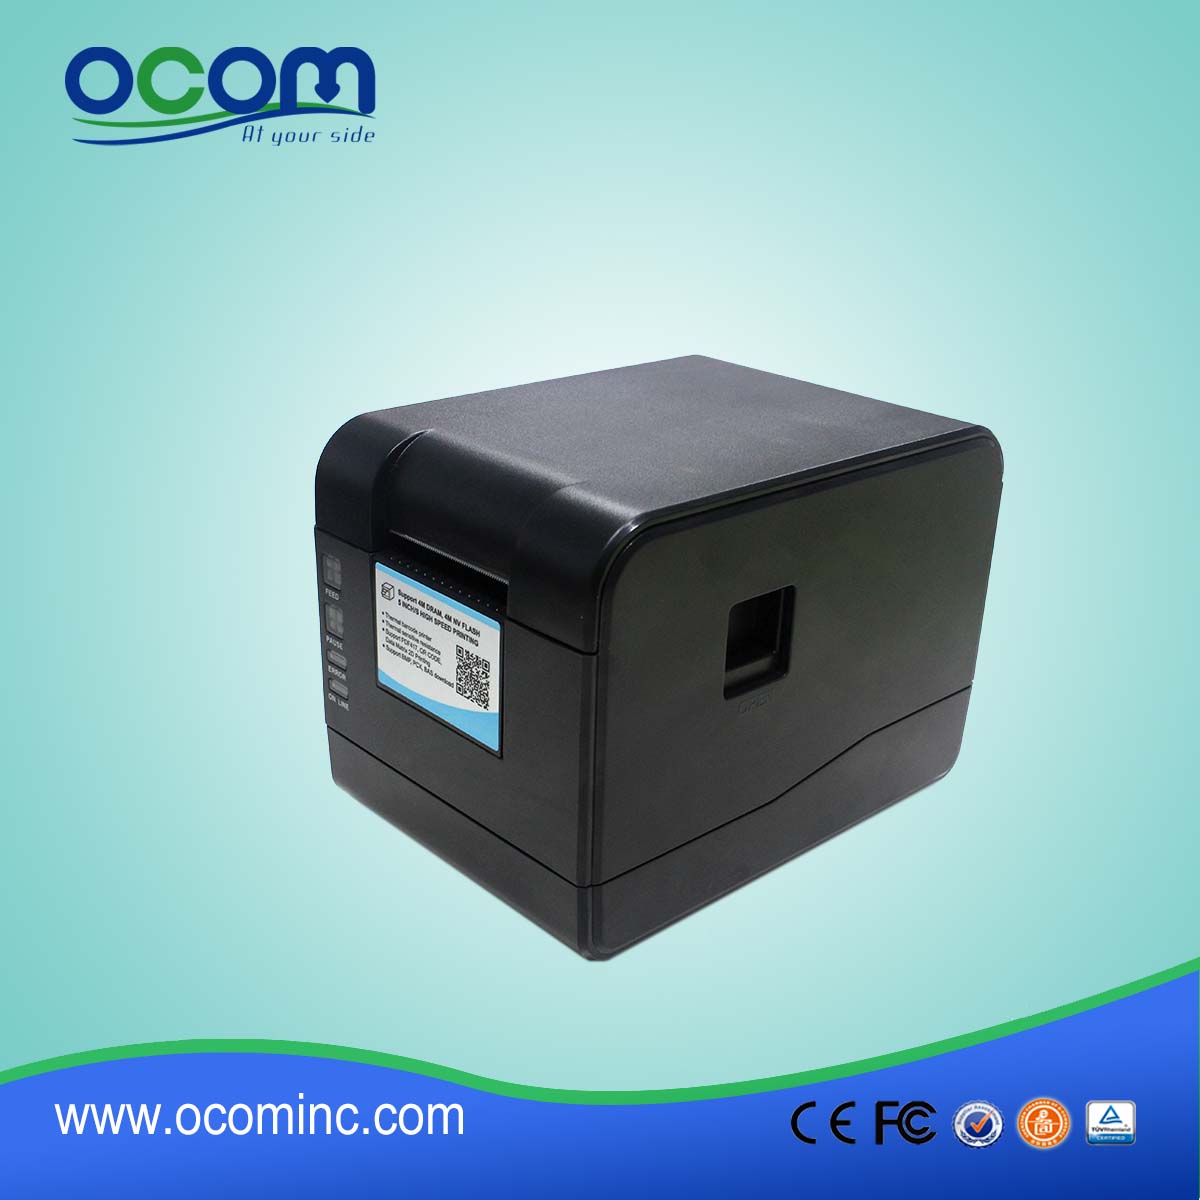 OCBP-006 2 «Принтер с этикетками с прямым термическим штрих-кодом» Поддерживающая термобумажная бумага / клейкая бумага